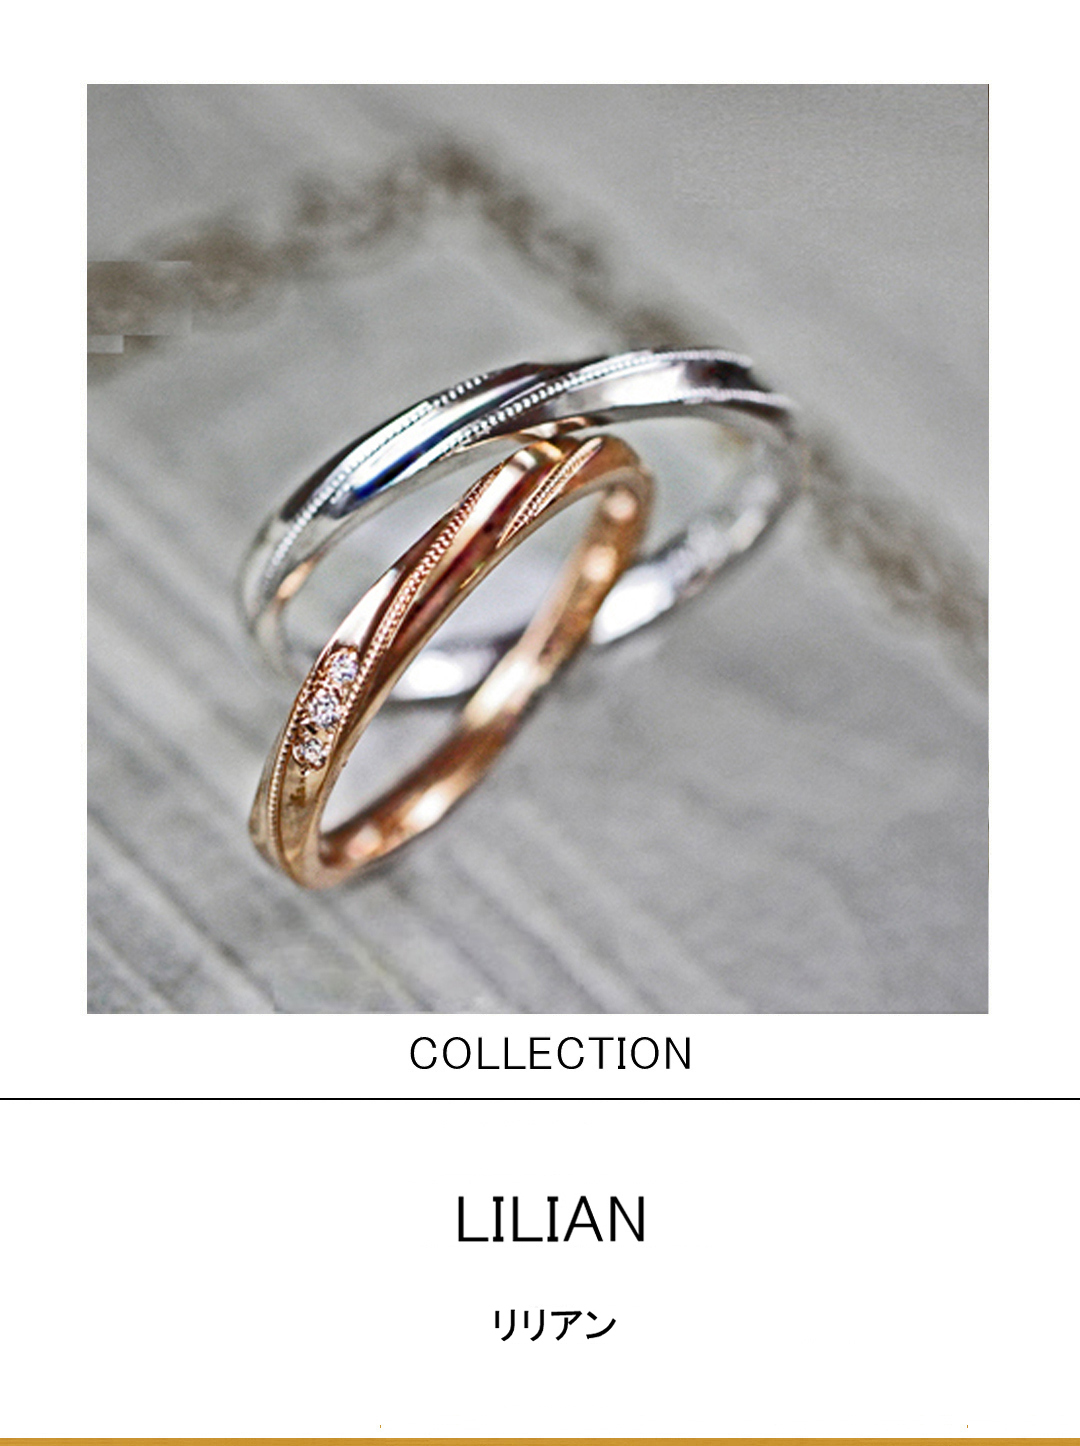 リリアン・ピンクゴールドで細いより糸をデザインした結婚指輪のサムネイル